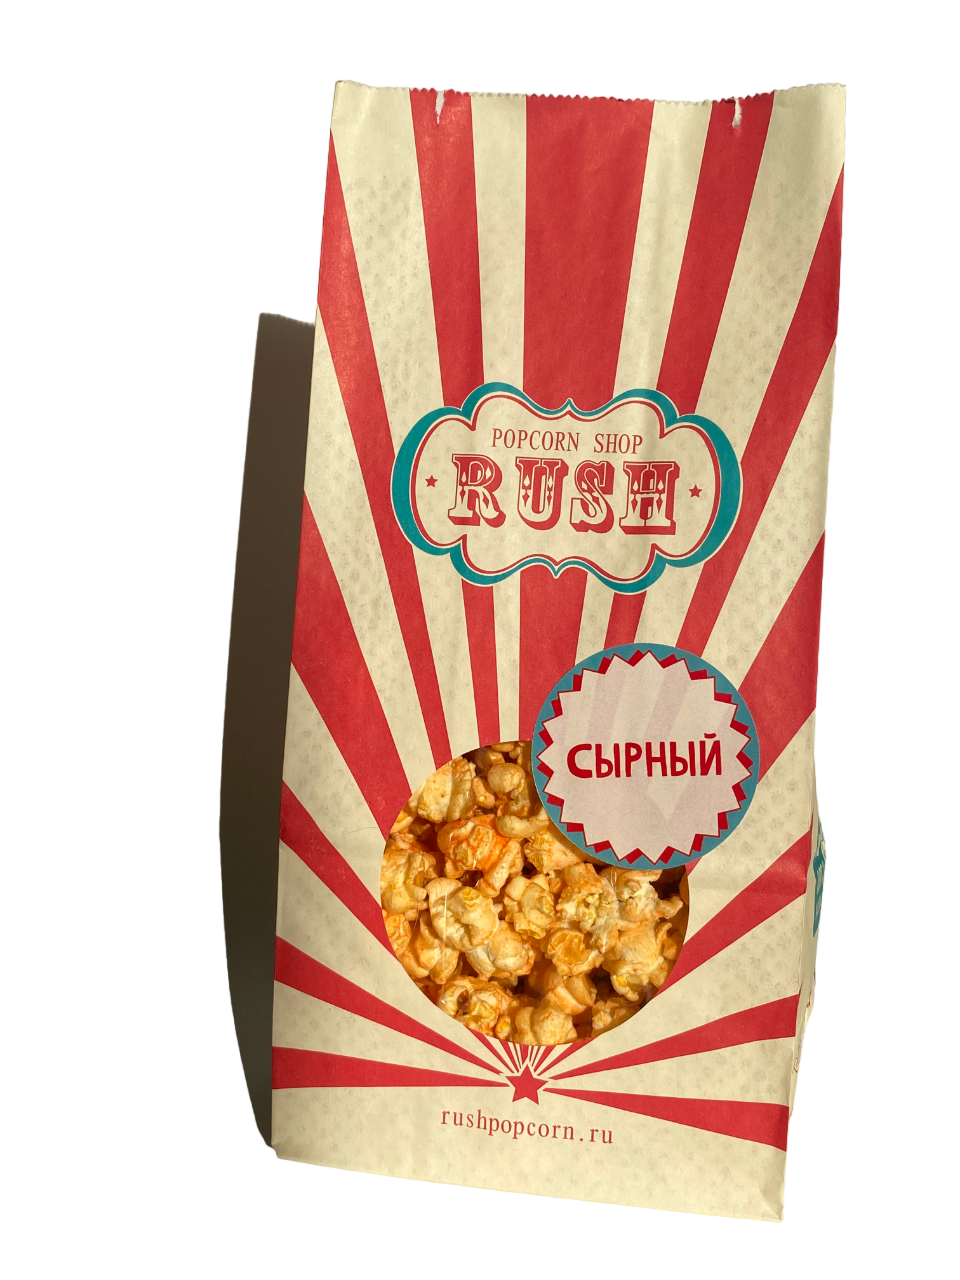 Попкорн Popcorn shop rush готовый, сырный, 100 г